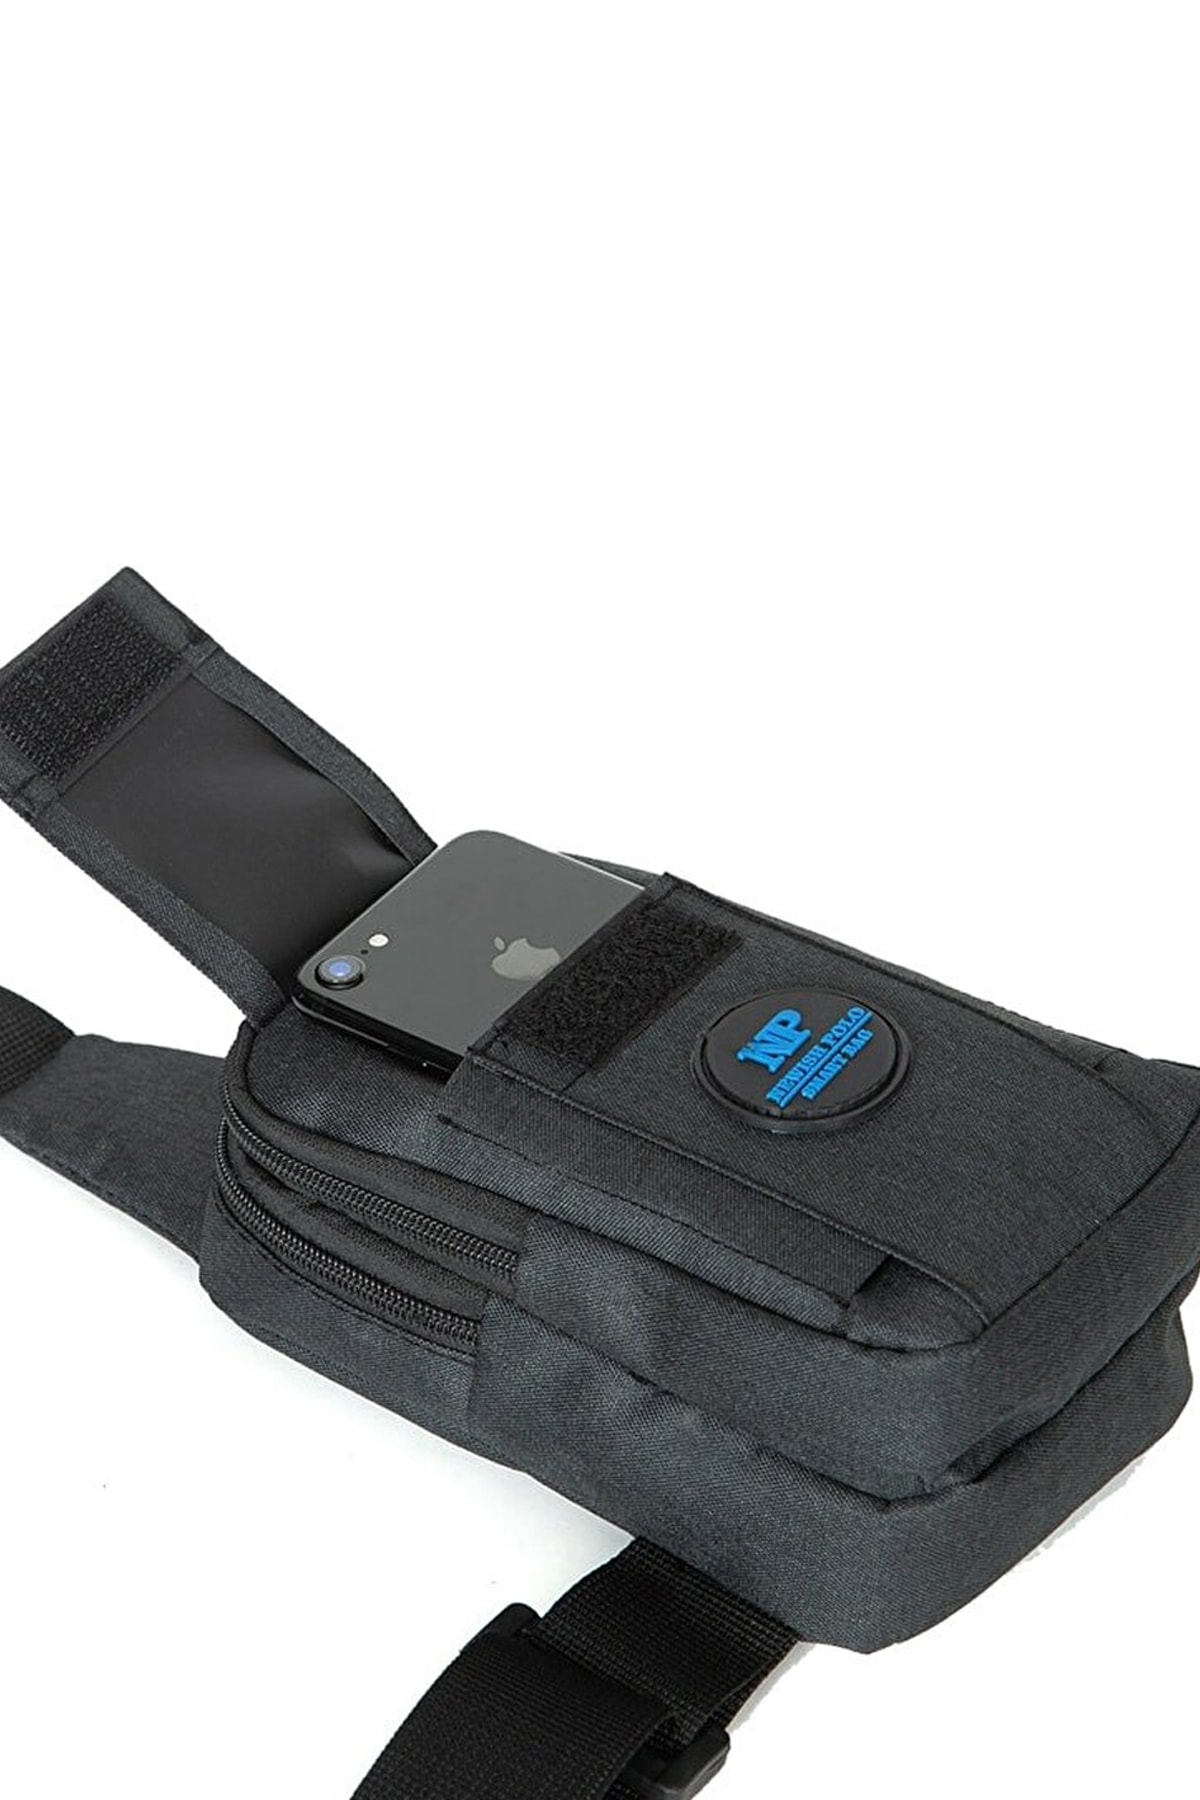 AVCA Unisex Çapraz Askılı Çanta Telefon Bölmeli Göğüs Çanta Tek Kol Omuz Bodybag RN10913